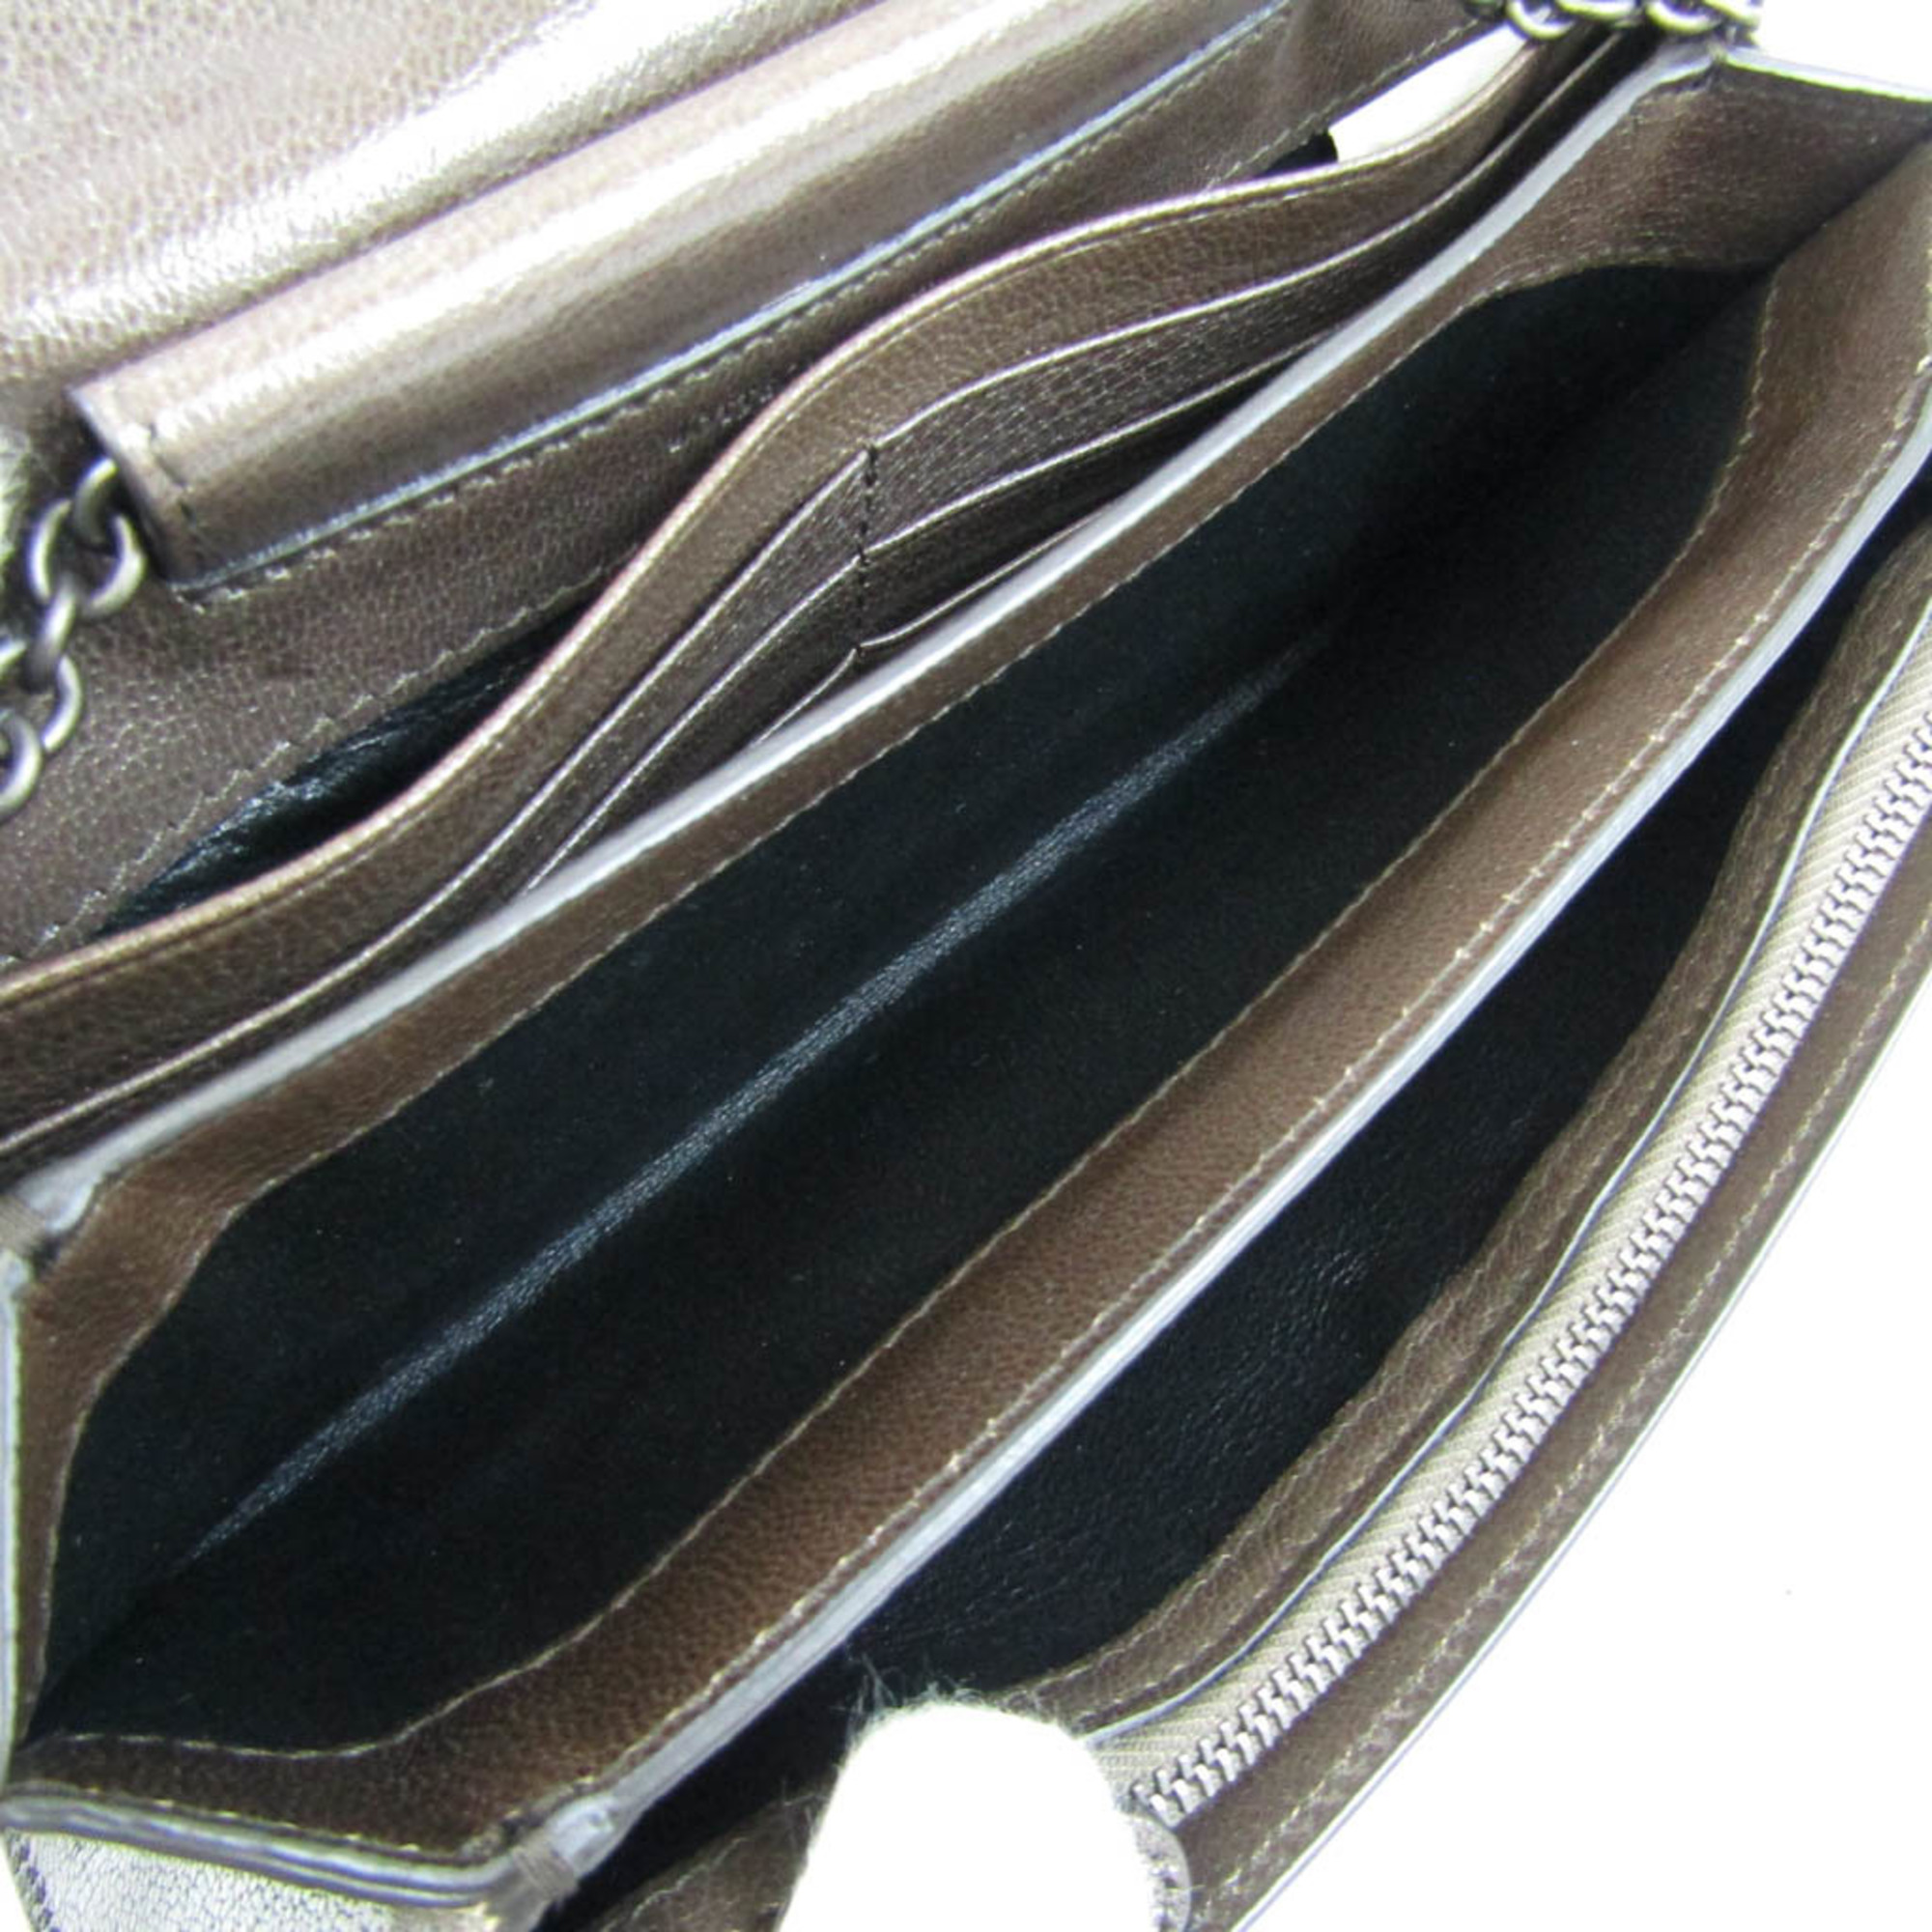 Bottega Veneta Women's Leather Chain/Shoulder Wallet Dark Khaki